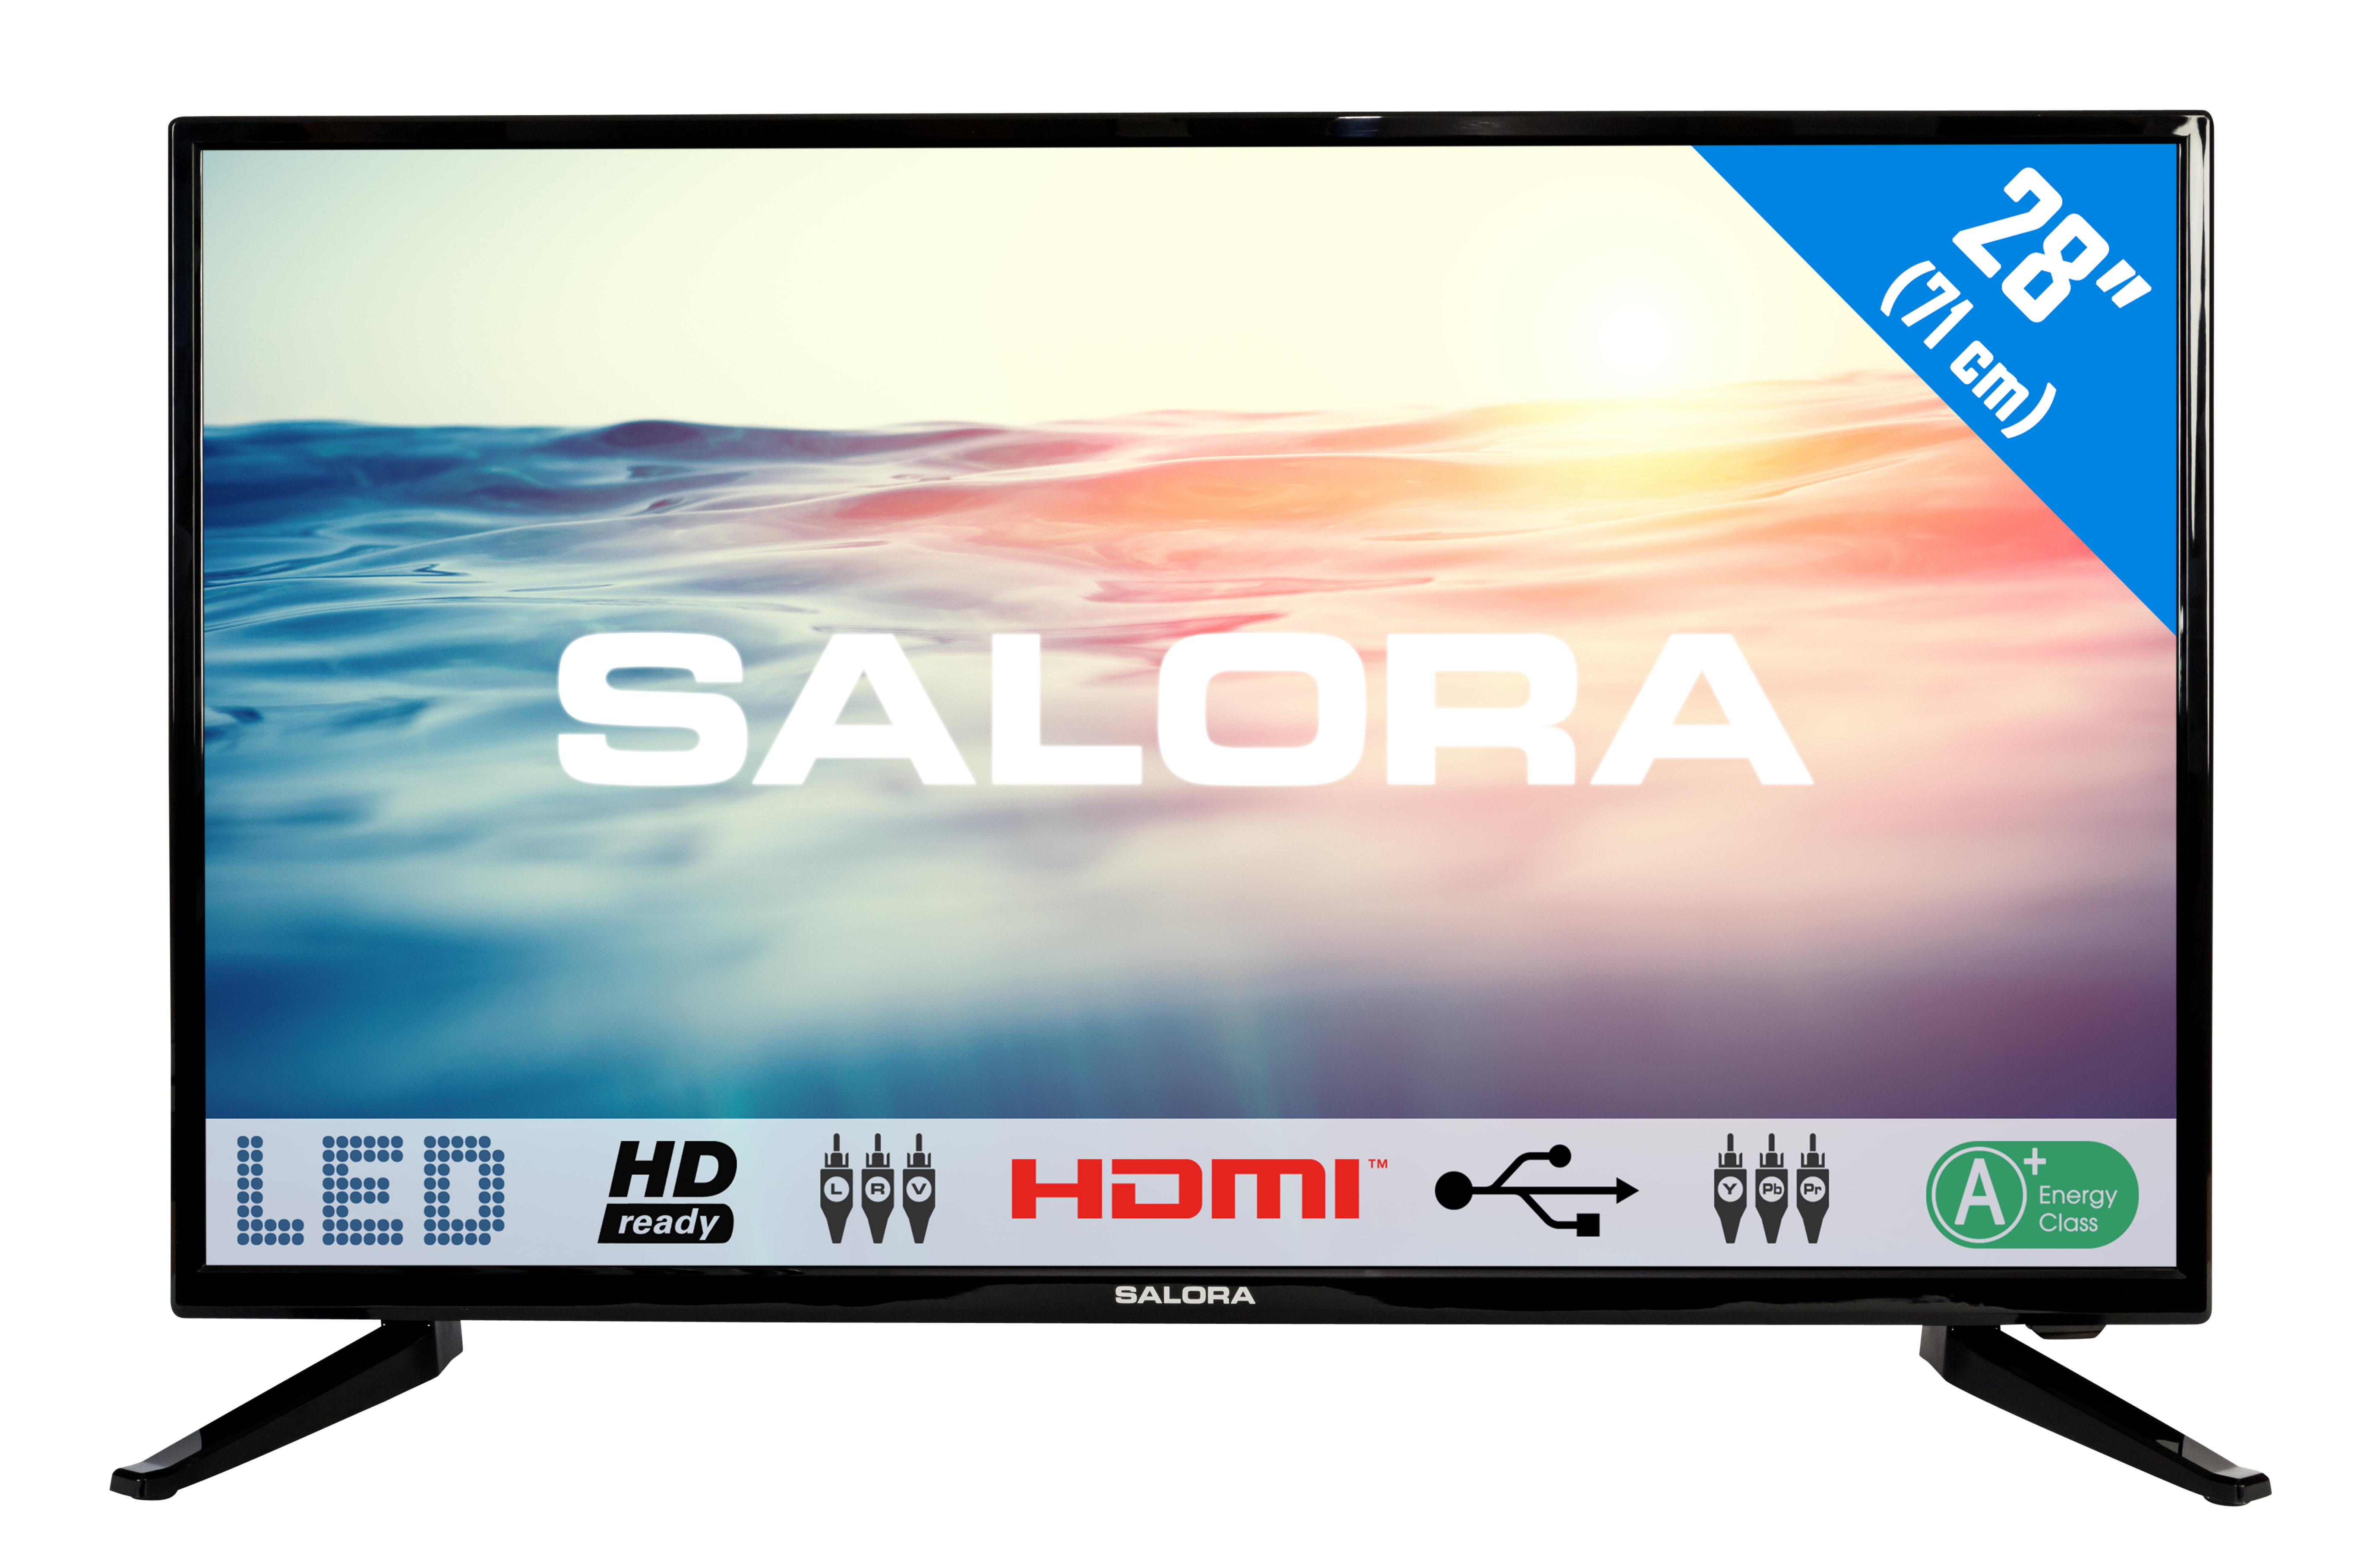 Salora 1600 series 28LED1600 TV